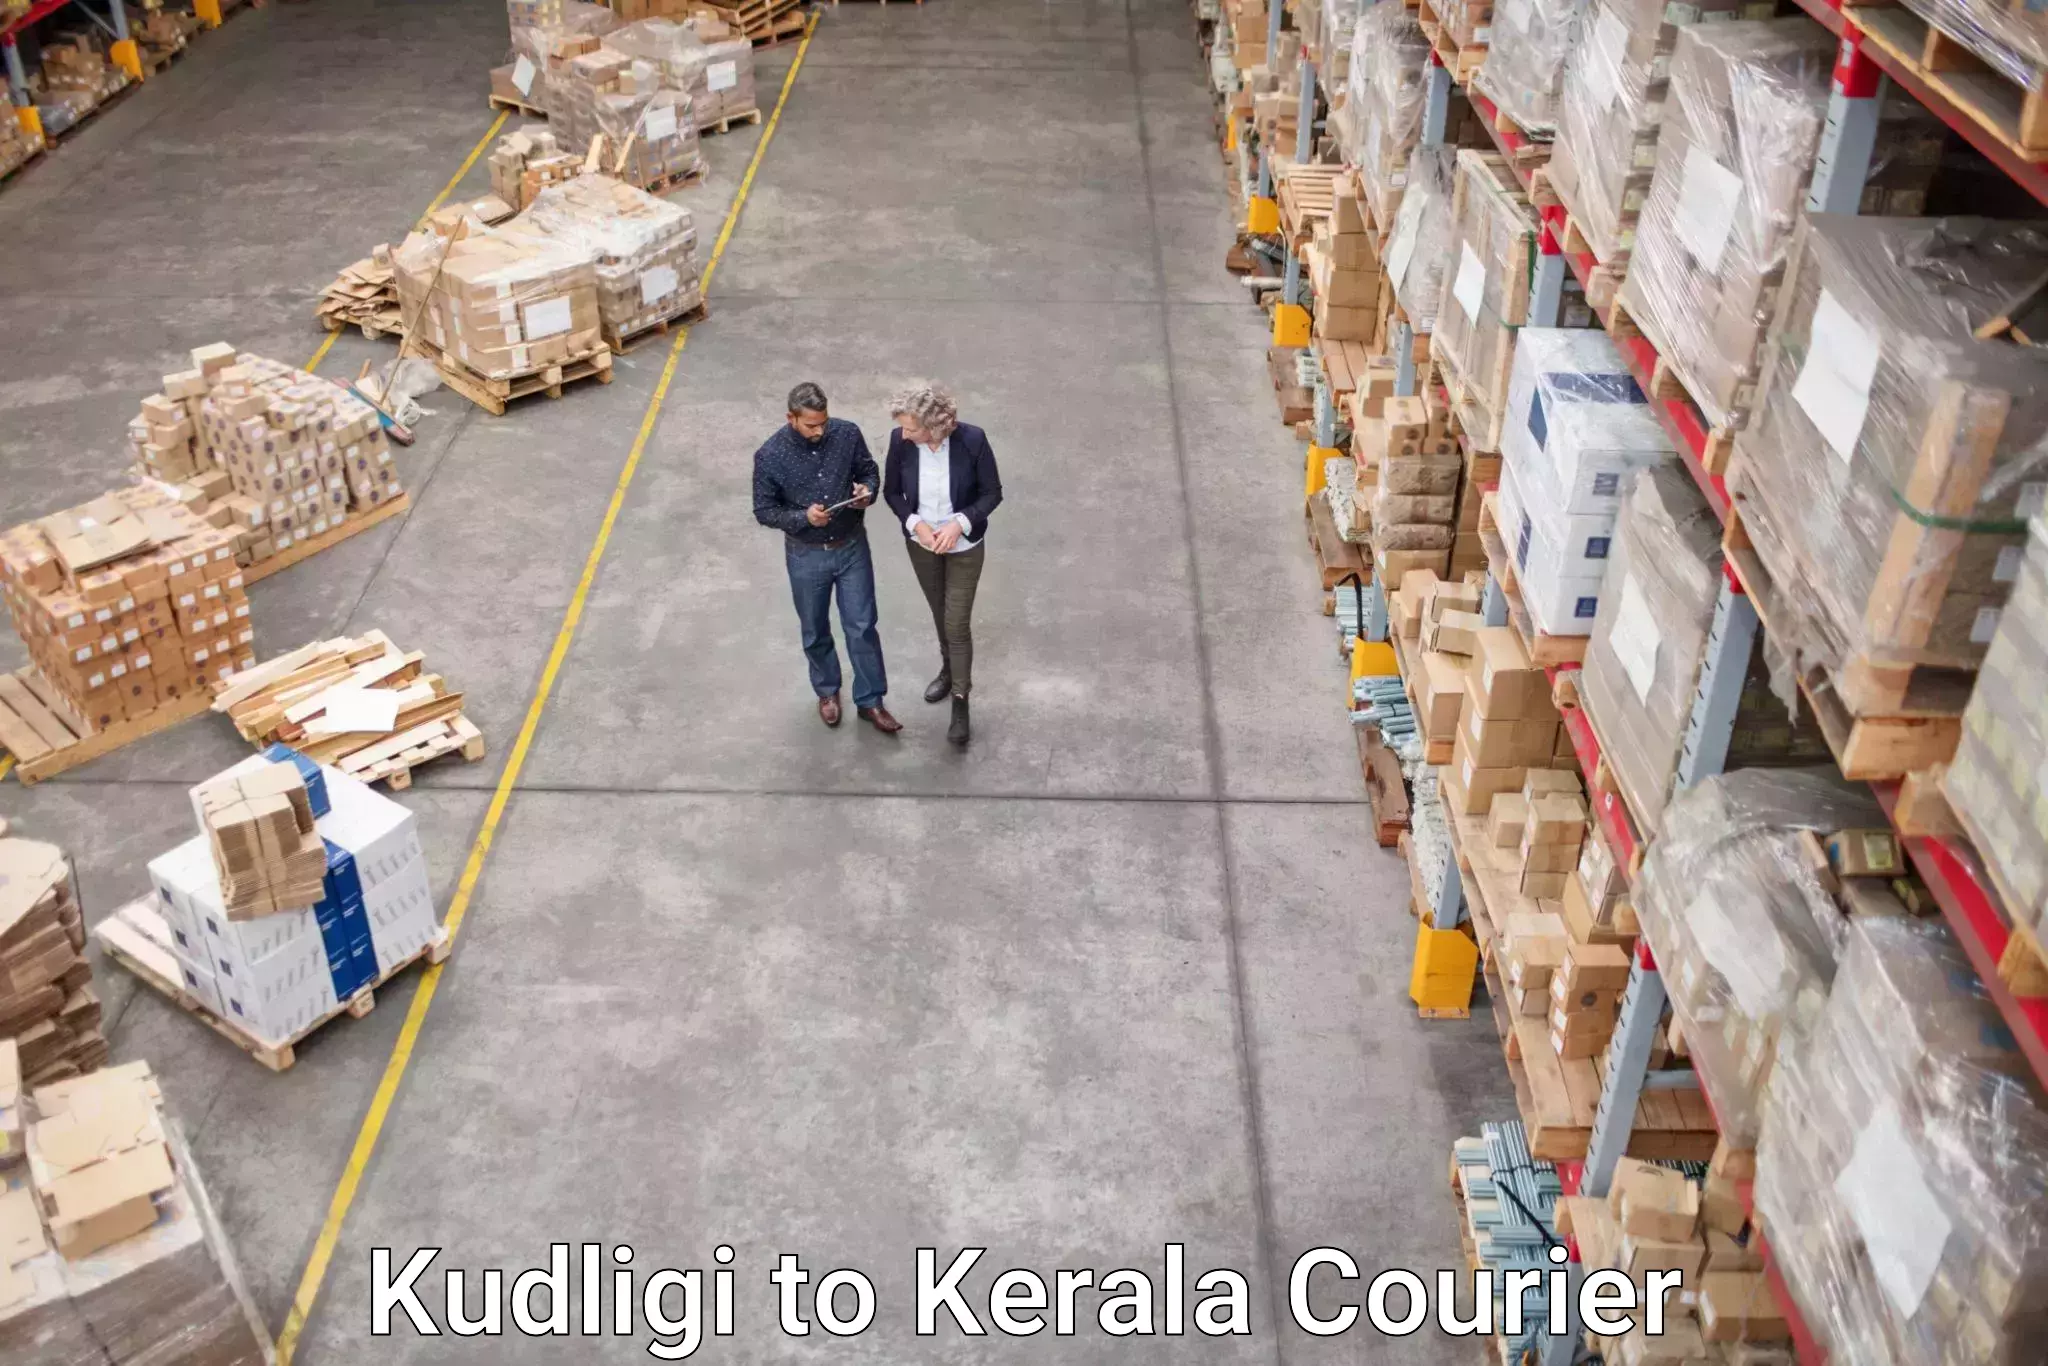 Automated parcel services Kudligi to Ernakulam